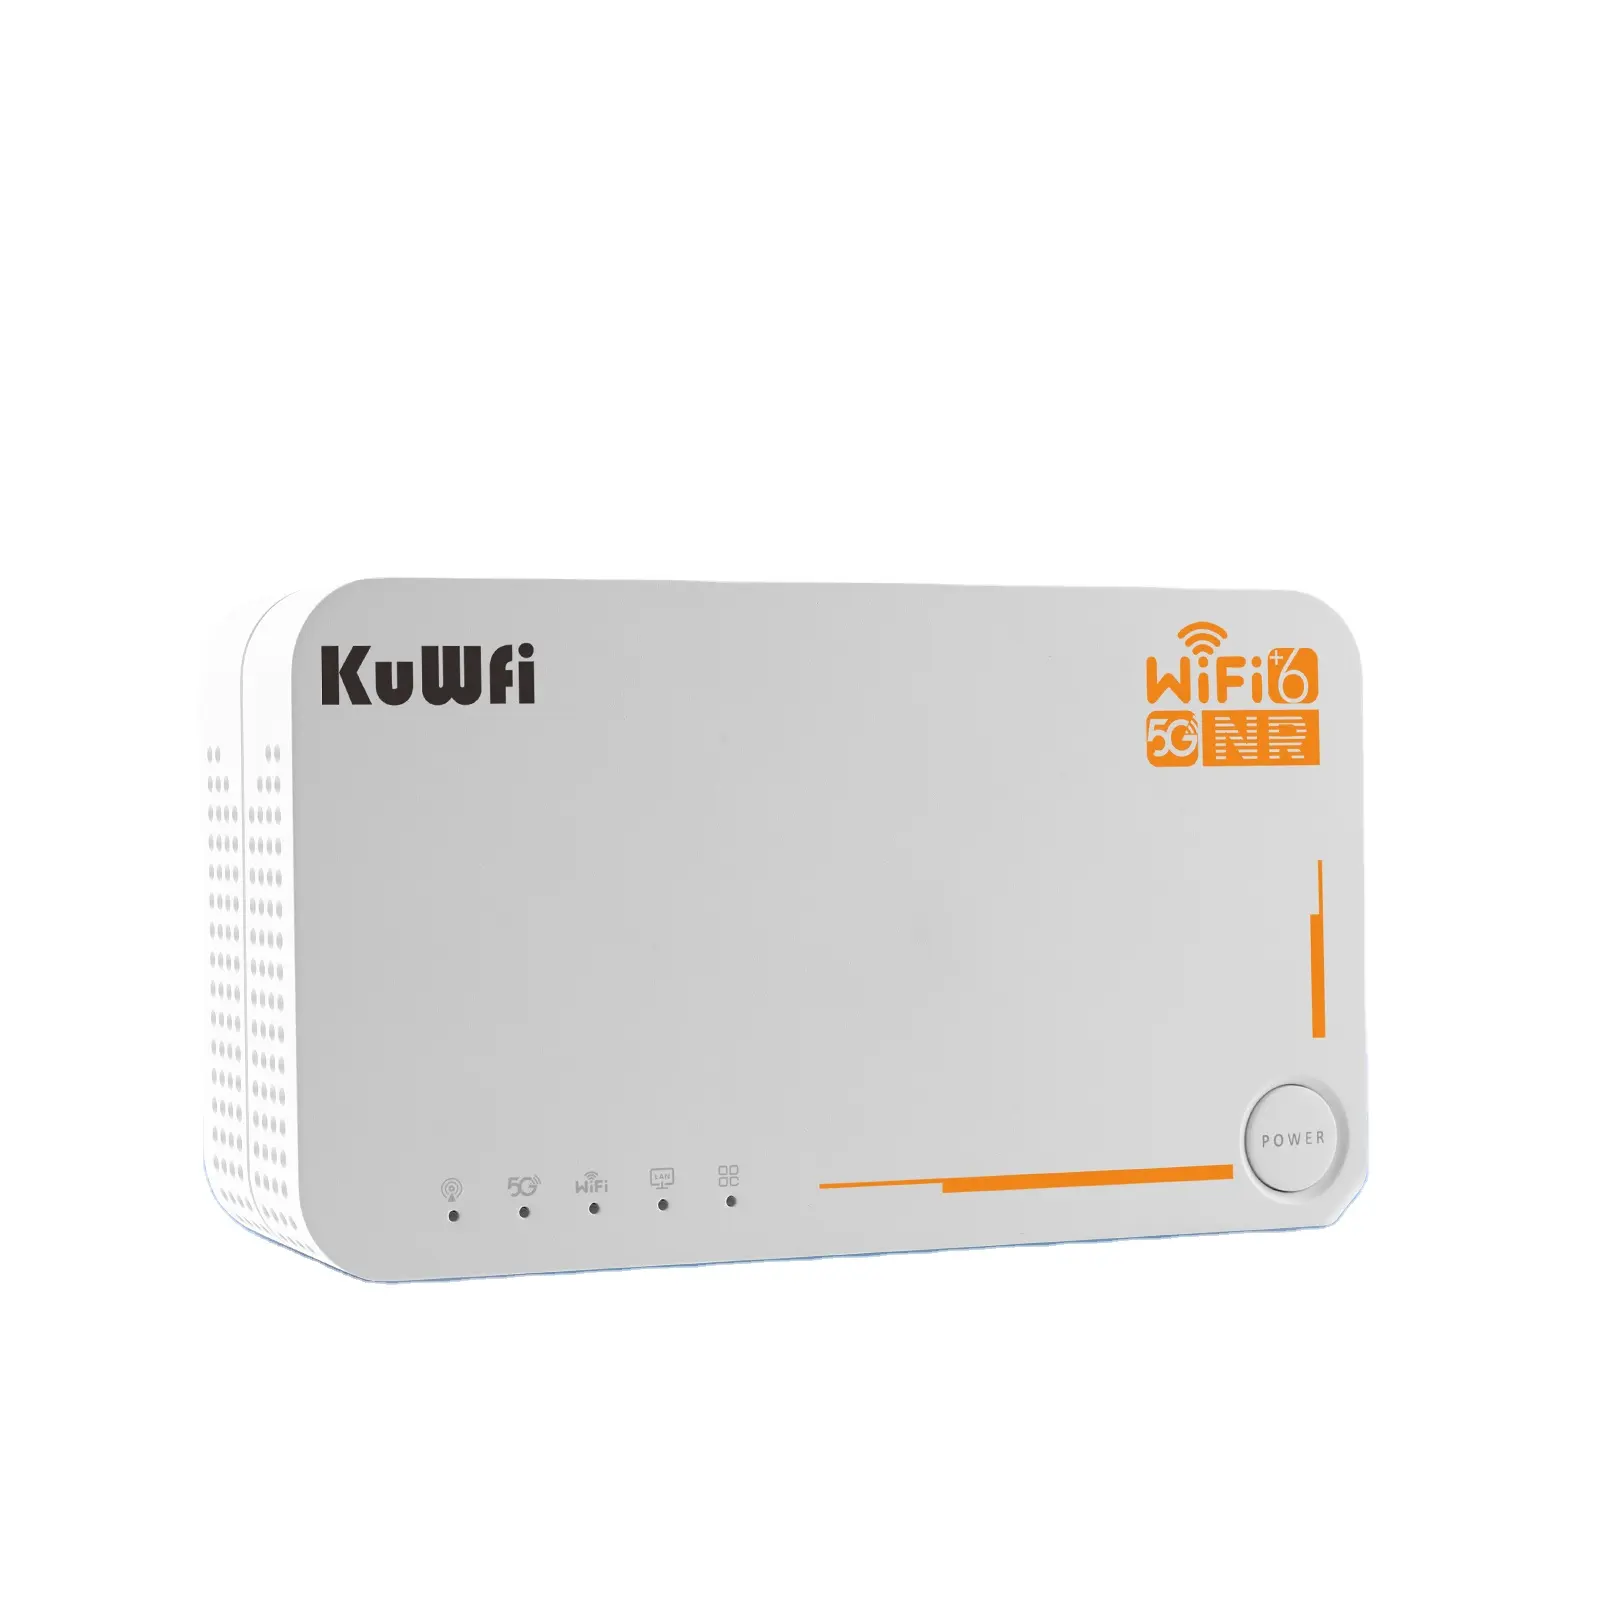 Bandas estadounidenses KuWFi de alta velocidad 5g CPE rauter WiFi router 5g 4000mAh 32 usuarios admiten 5g banda completa wifi6 Router con ranura para tarjeta SIM